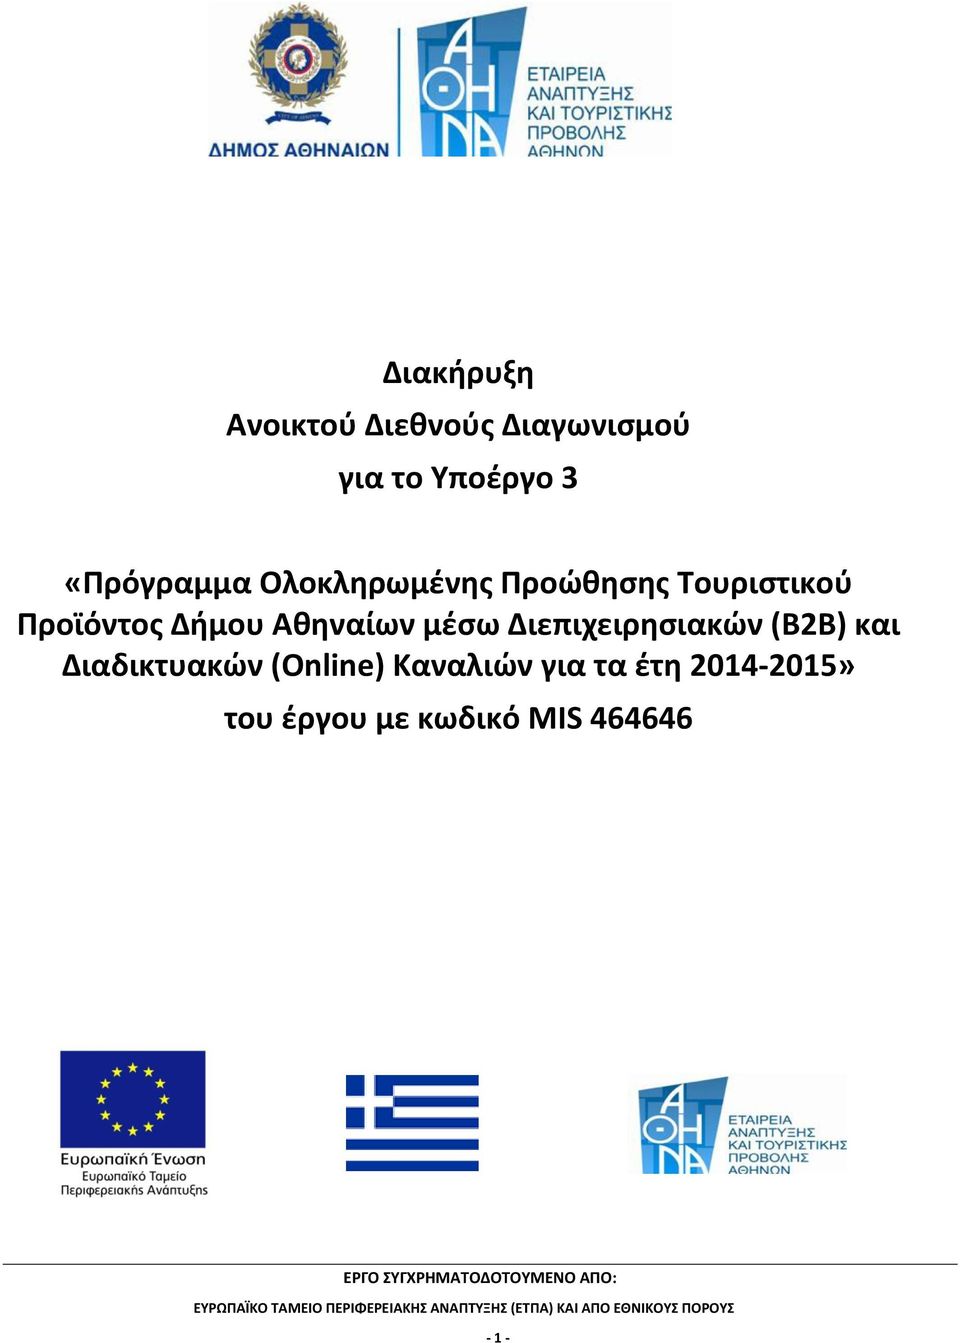 Δήμου Αθηναίων μέσω Διεπιχειρησιακών (Β2Β) και Διαδικτυακών